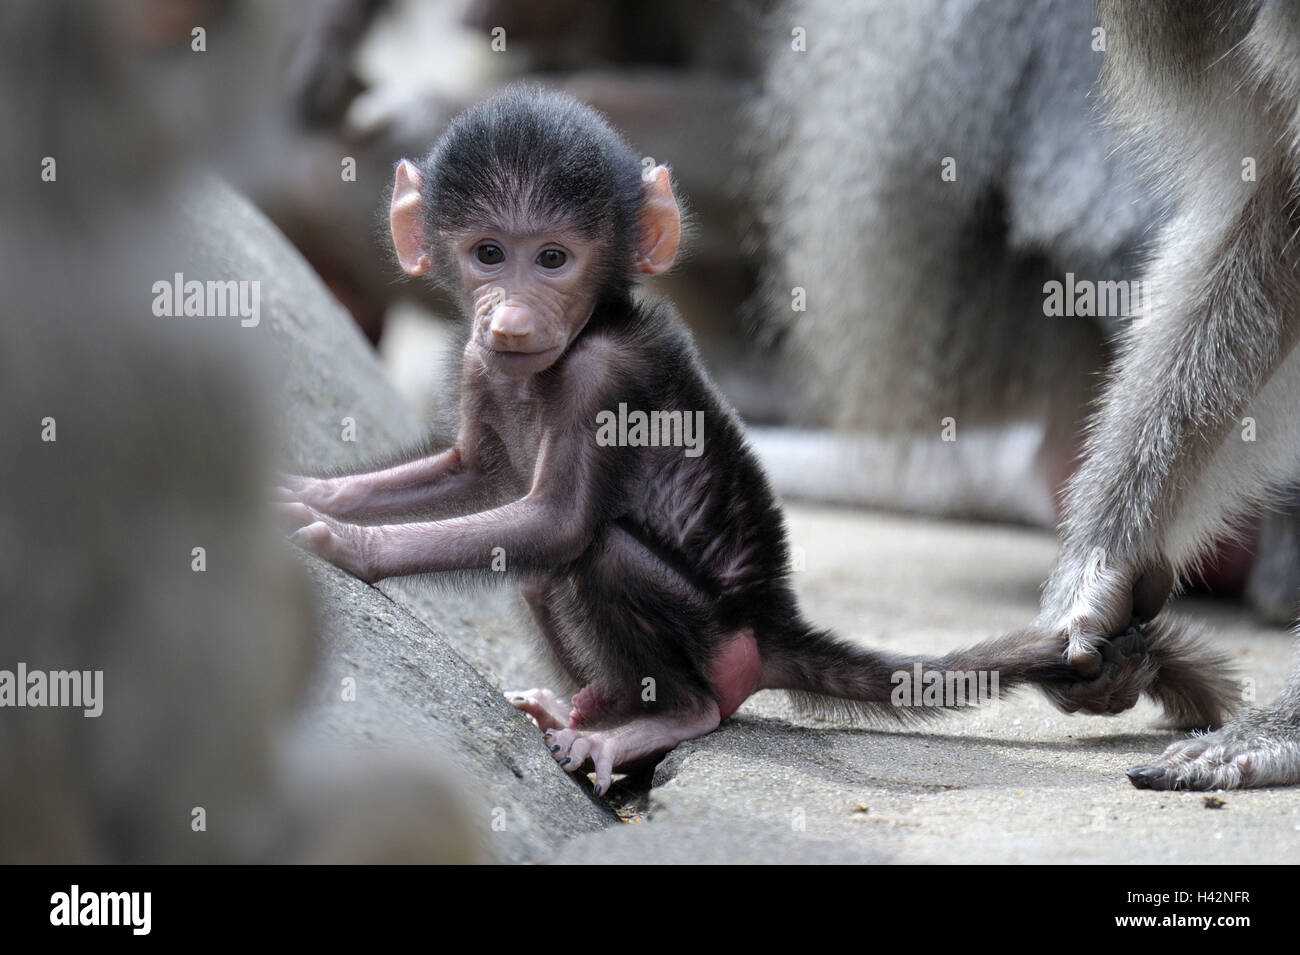 Hamadryas baboons, Papio hamadryas, Old animals, young animal, animals, zoo animals, zoo, mammals, primates, monkeys, long-tailed monkeys, baboons, wild animals, young, little monkey, Stock Photo